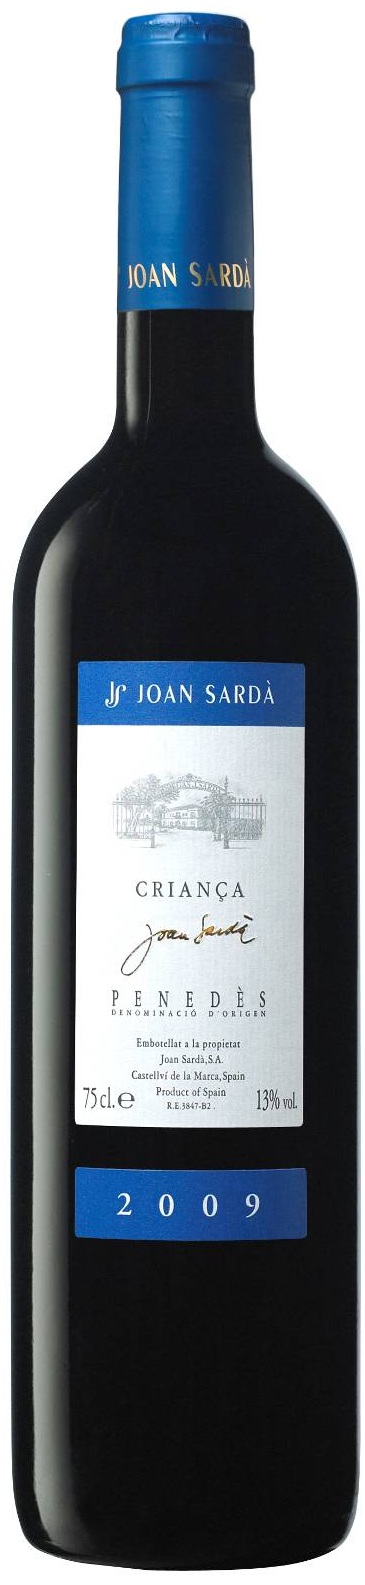 Imagen de la botella de Vino Joan Sardà Criança